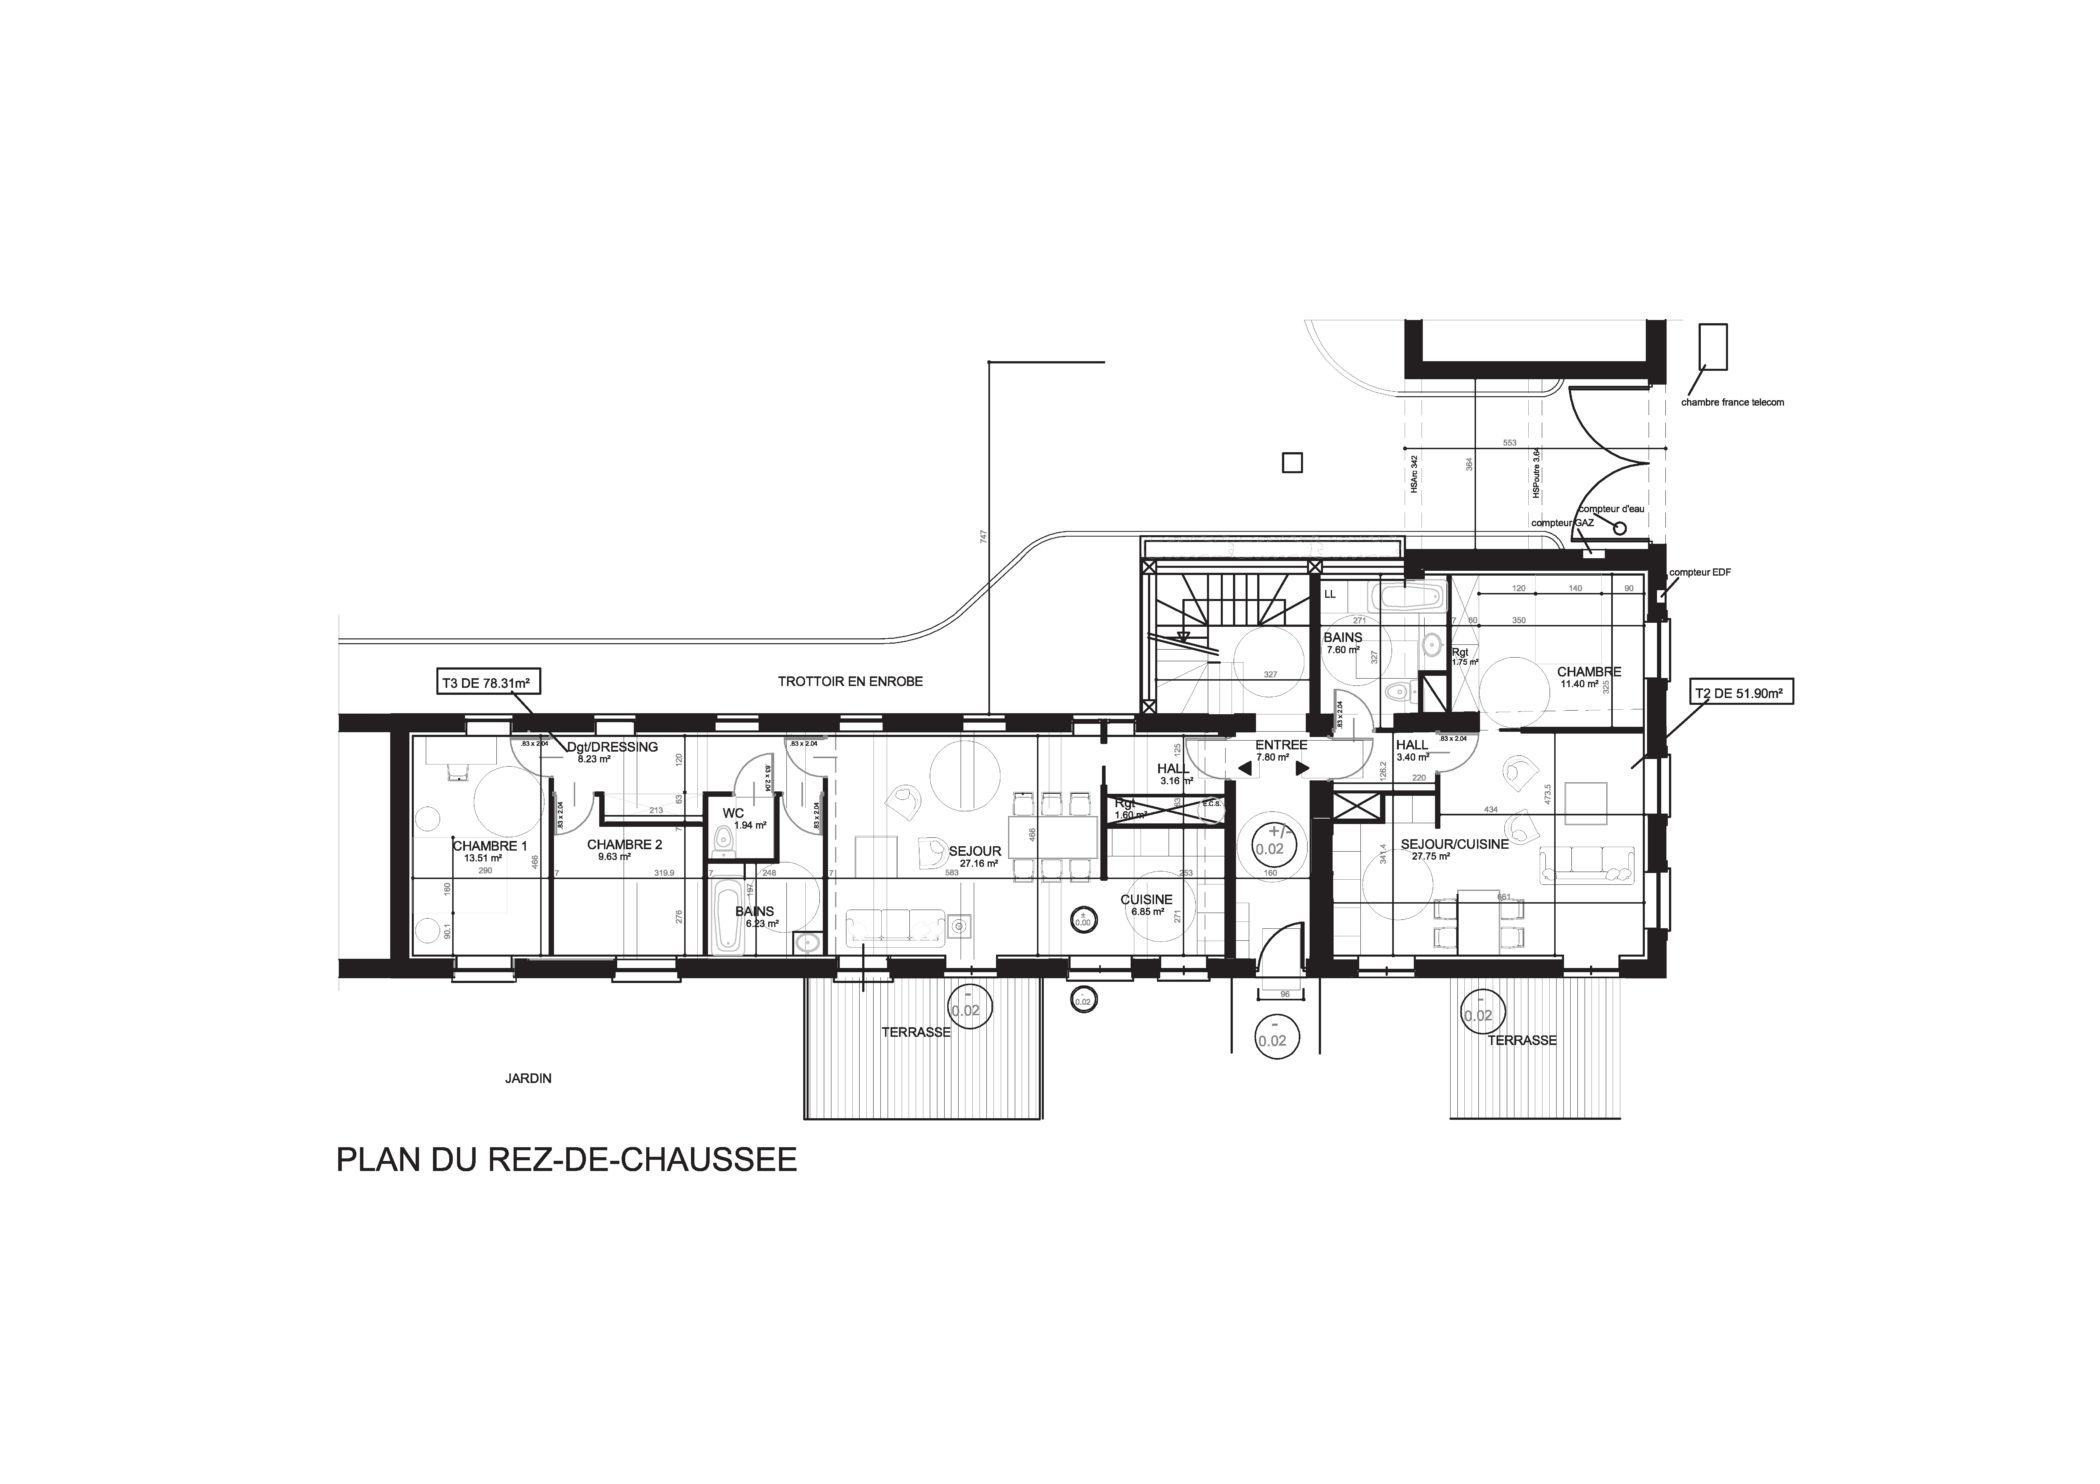 Nicolas Delannoy architecte -PROJET réhabilitation _ logement collectif - metropole lilloise plan RDC 2